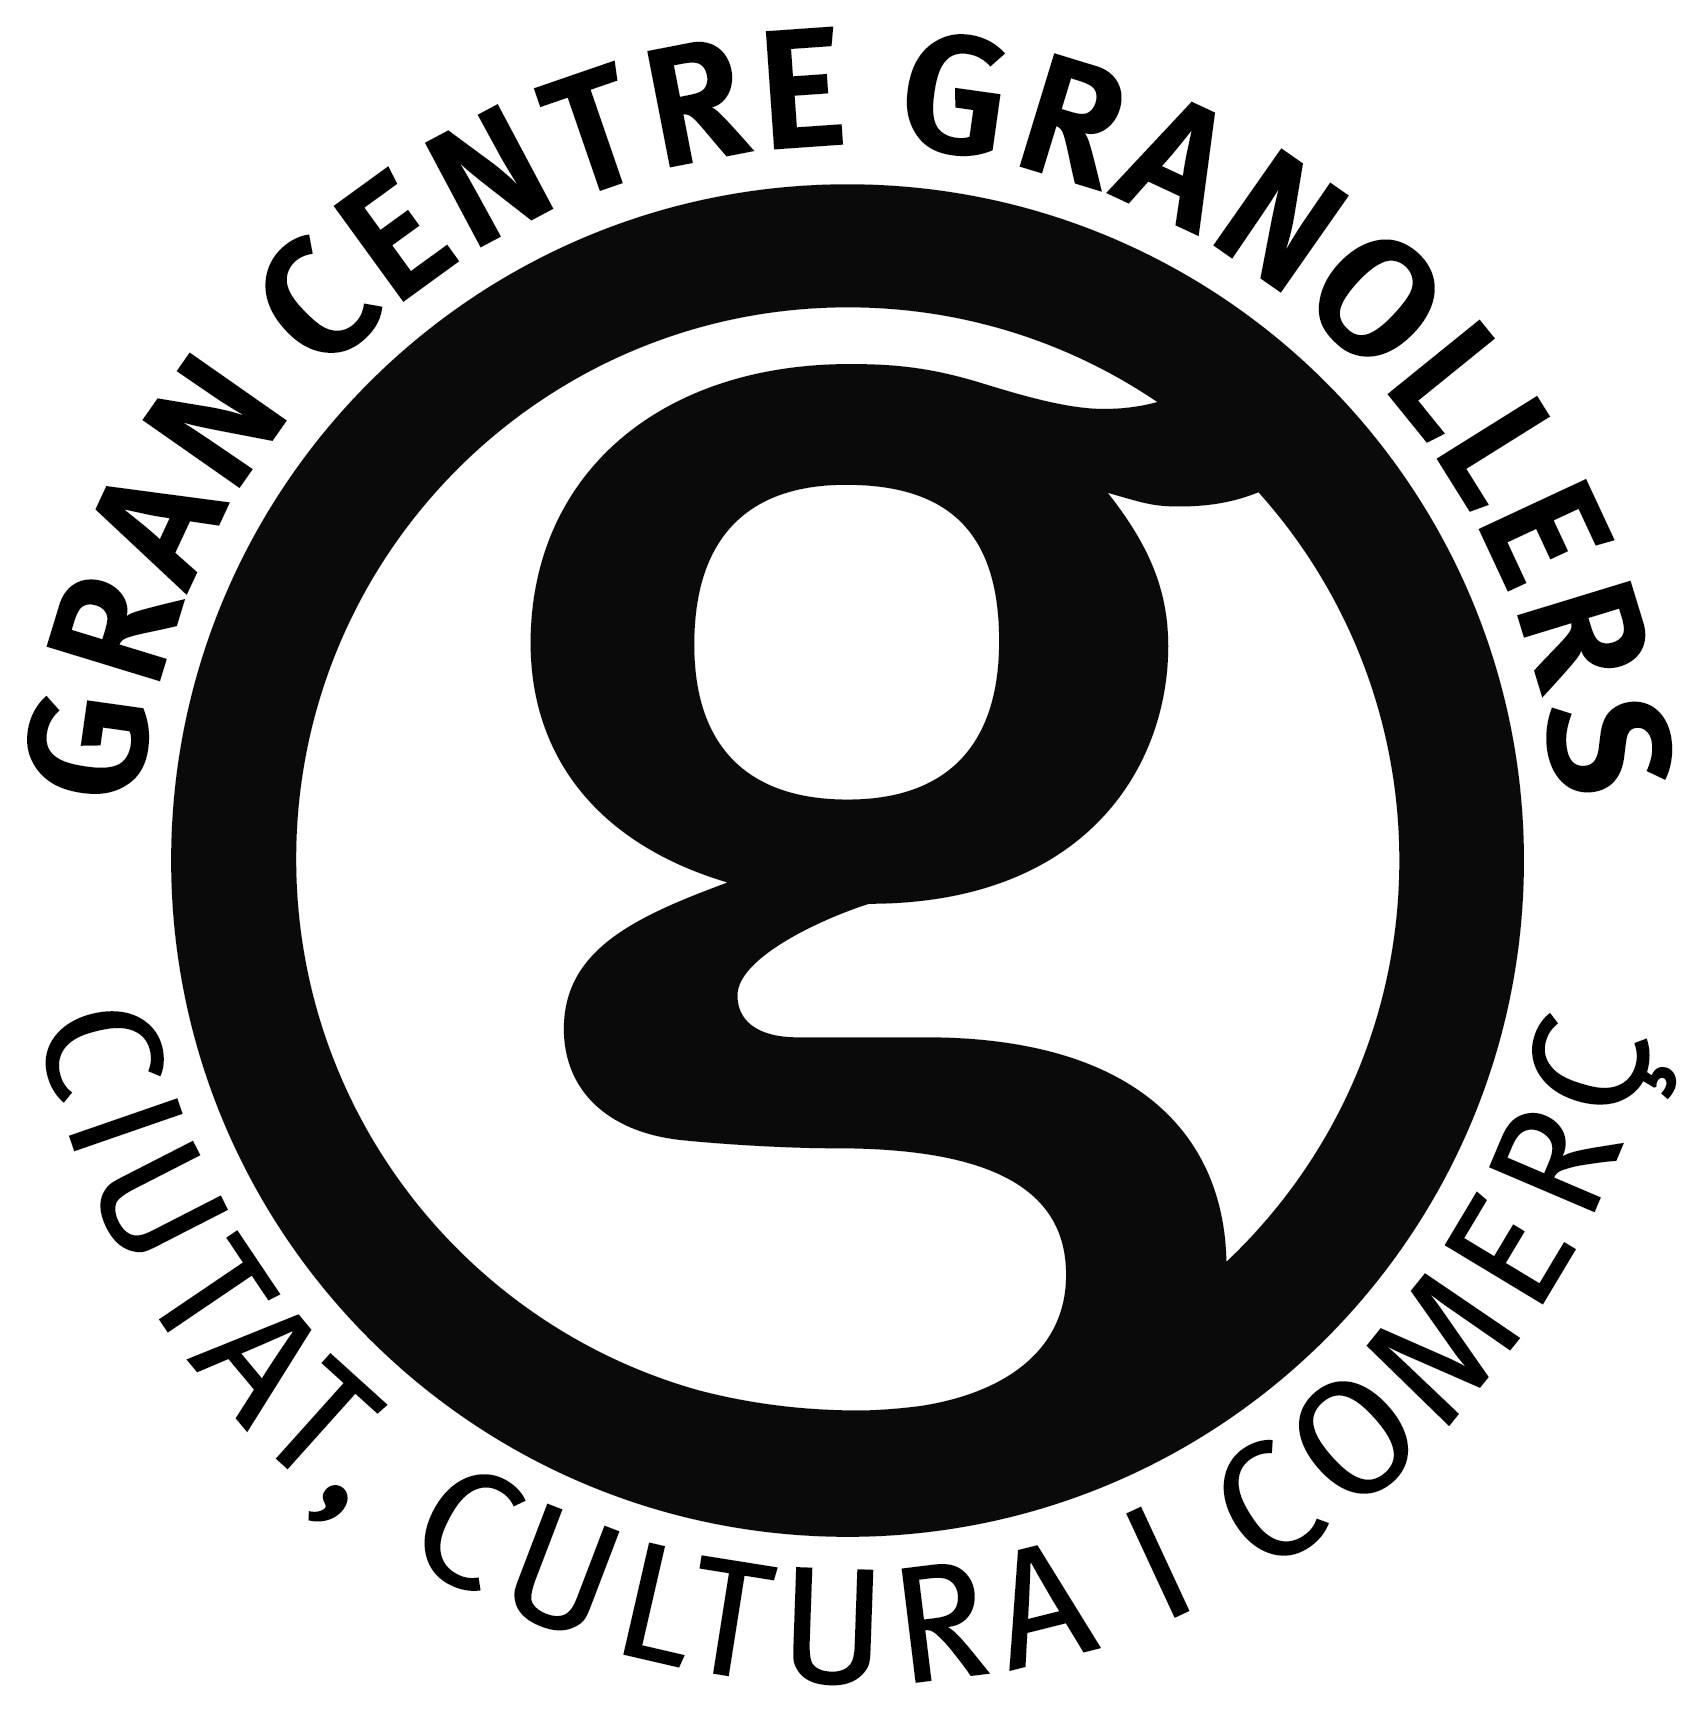 Gran Centre Granollers